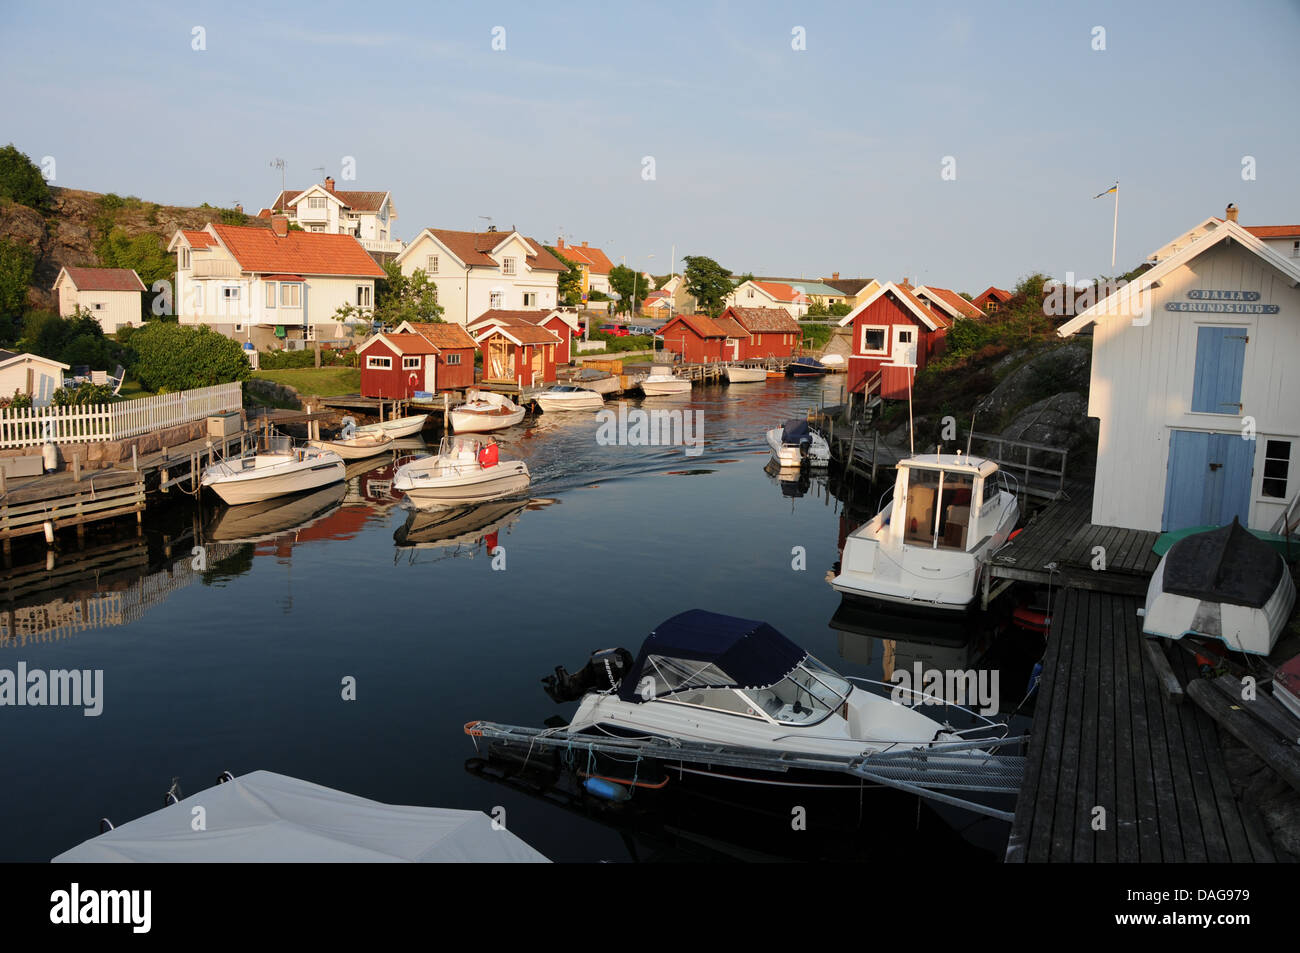 Village de pêcheurs de Grundsund sur la côte ouest de la Suède, avec des bateaux, des maisons, des quais en bois et les hangars à bateaux Banque D'Images